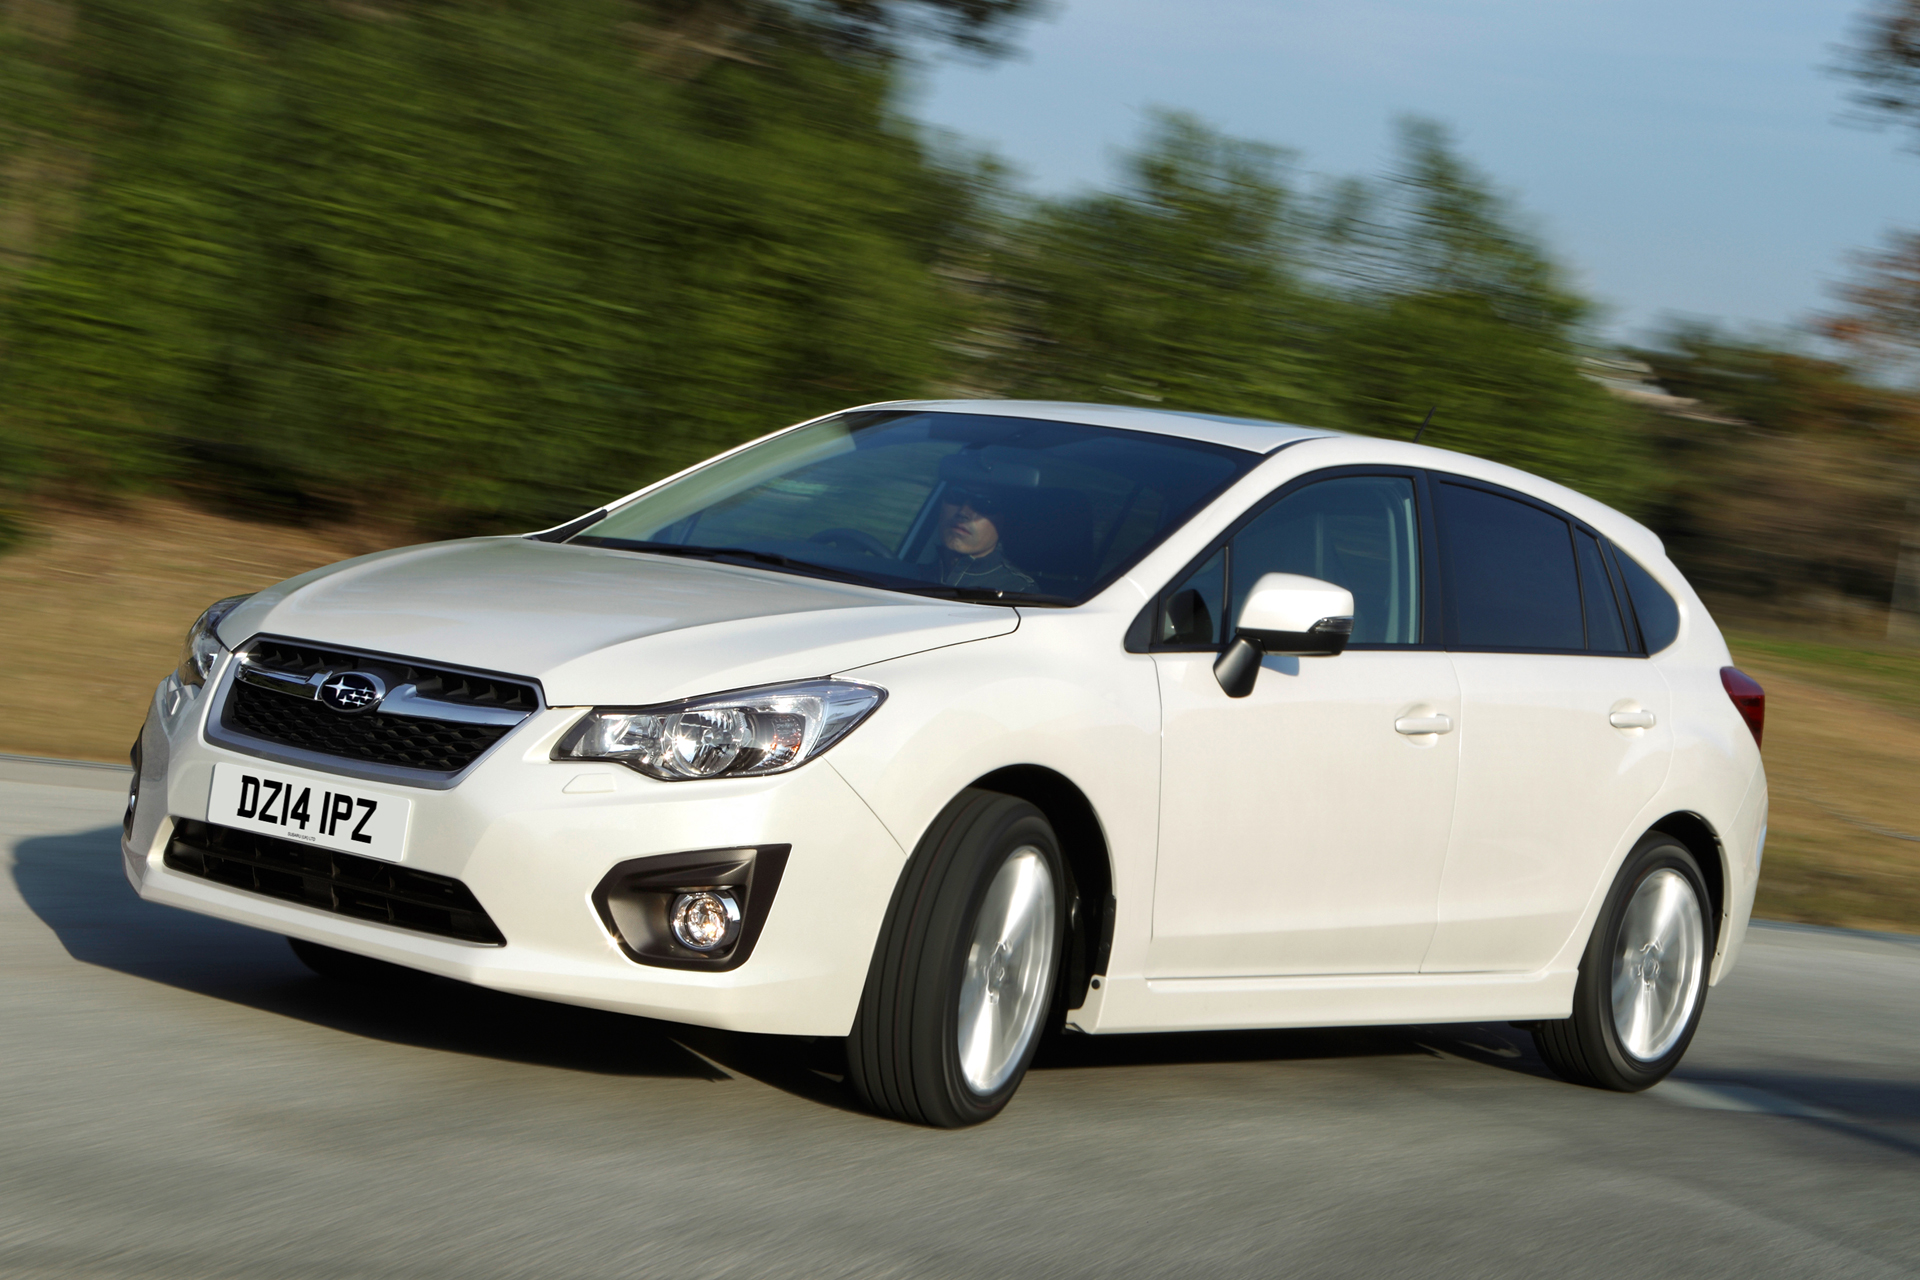 New Subaru Impreza, UK price, spec and details evo